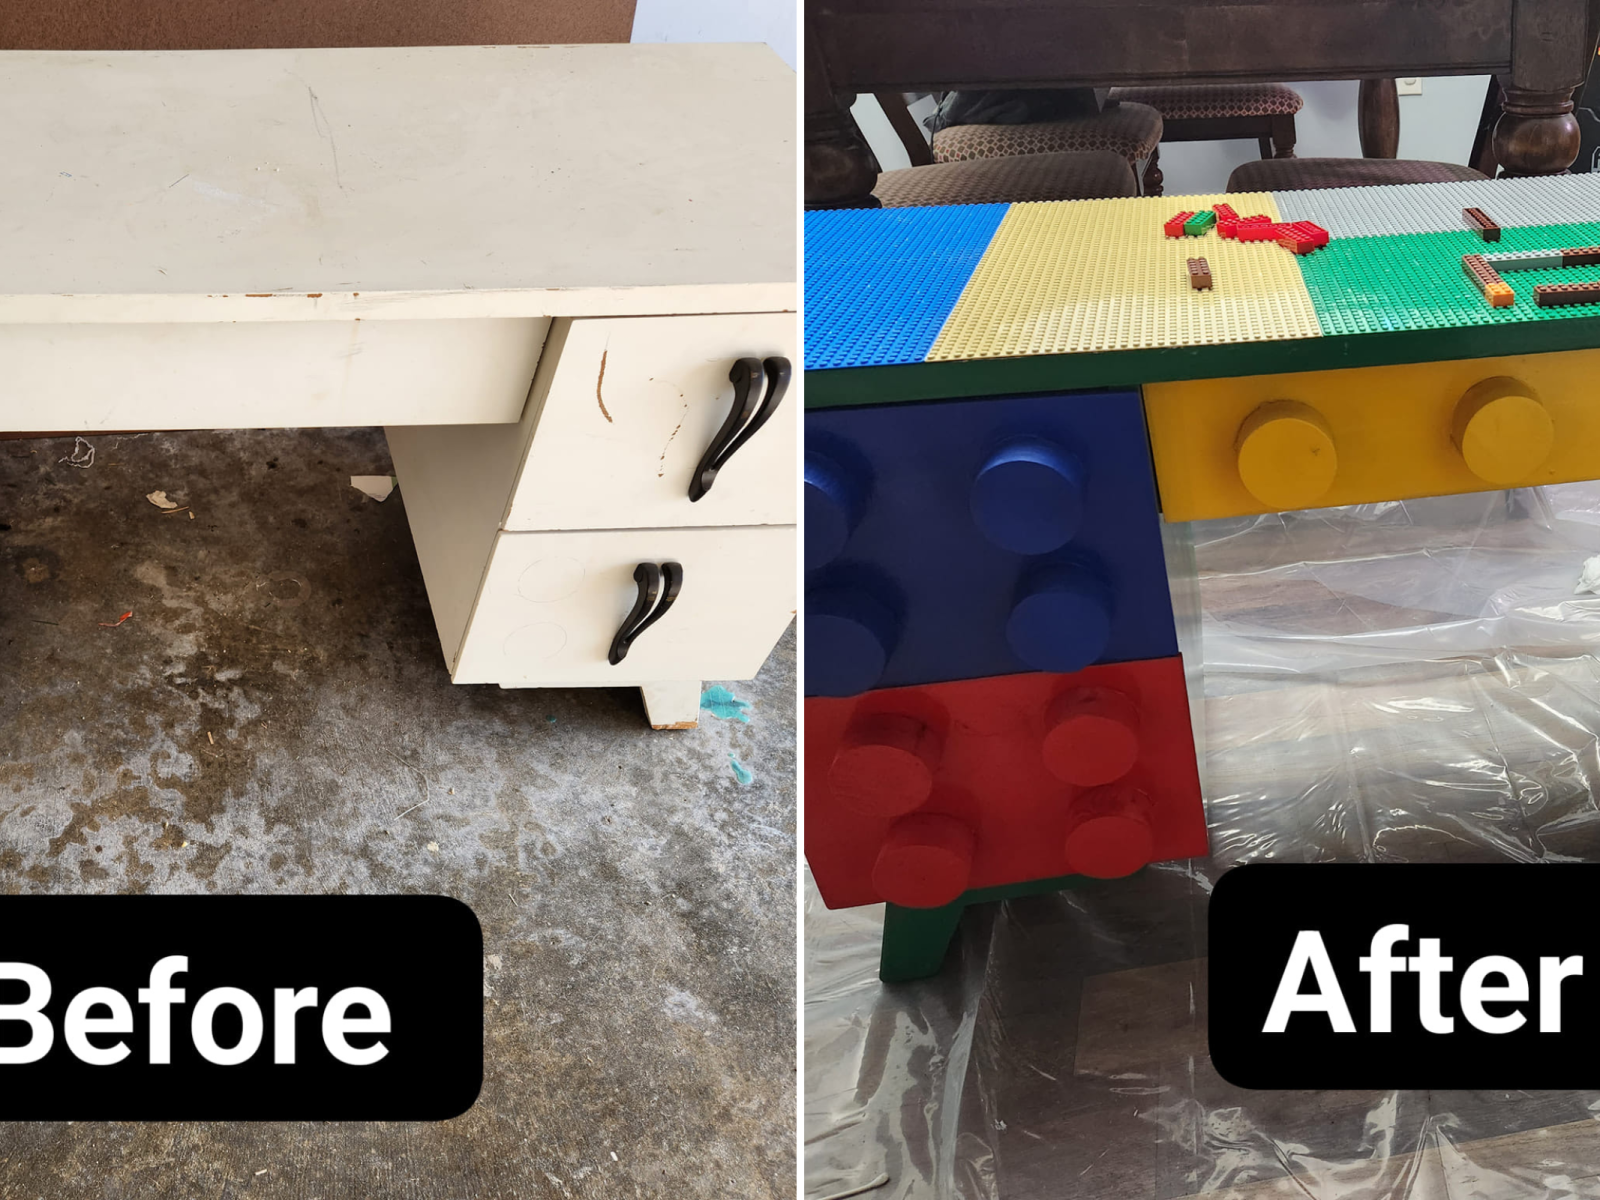 DIY Lego Table with Custom Knobs - Infarrantly Creative